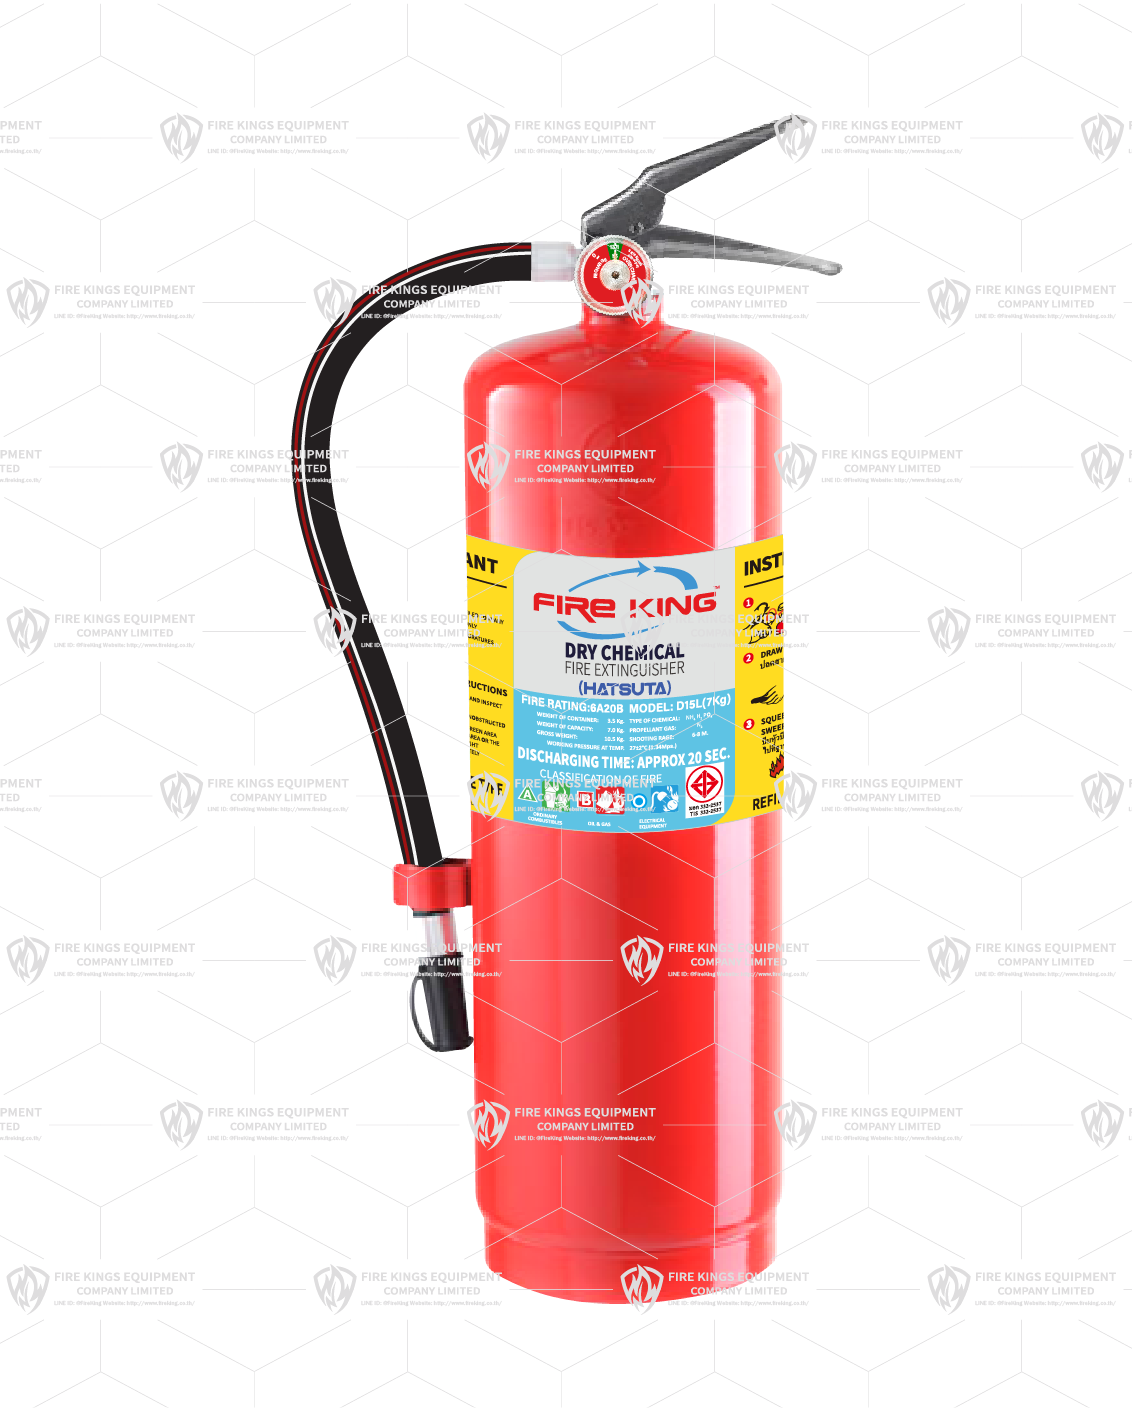 Dry Chemical(HASUTA) Extinguisher